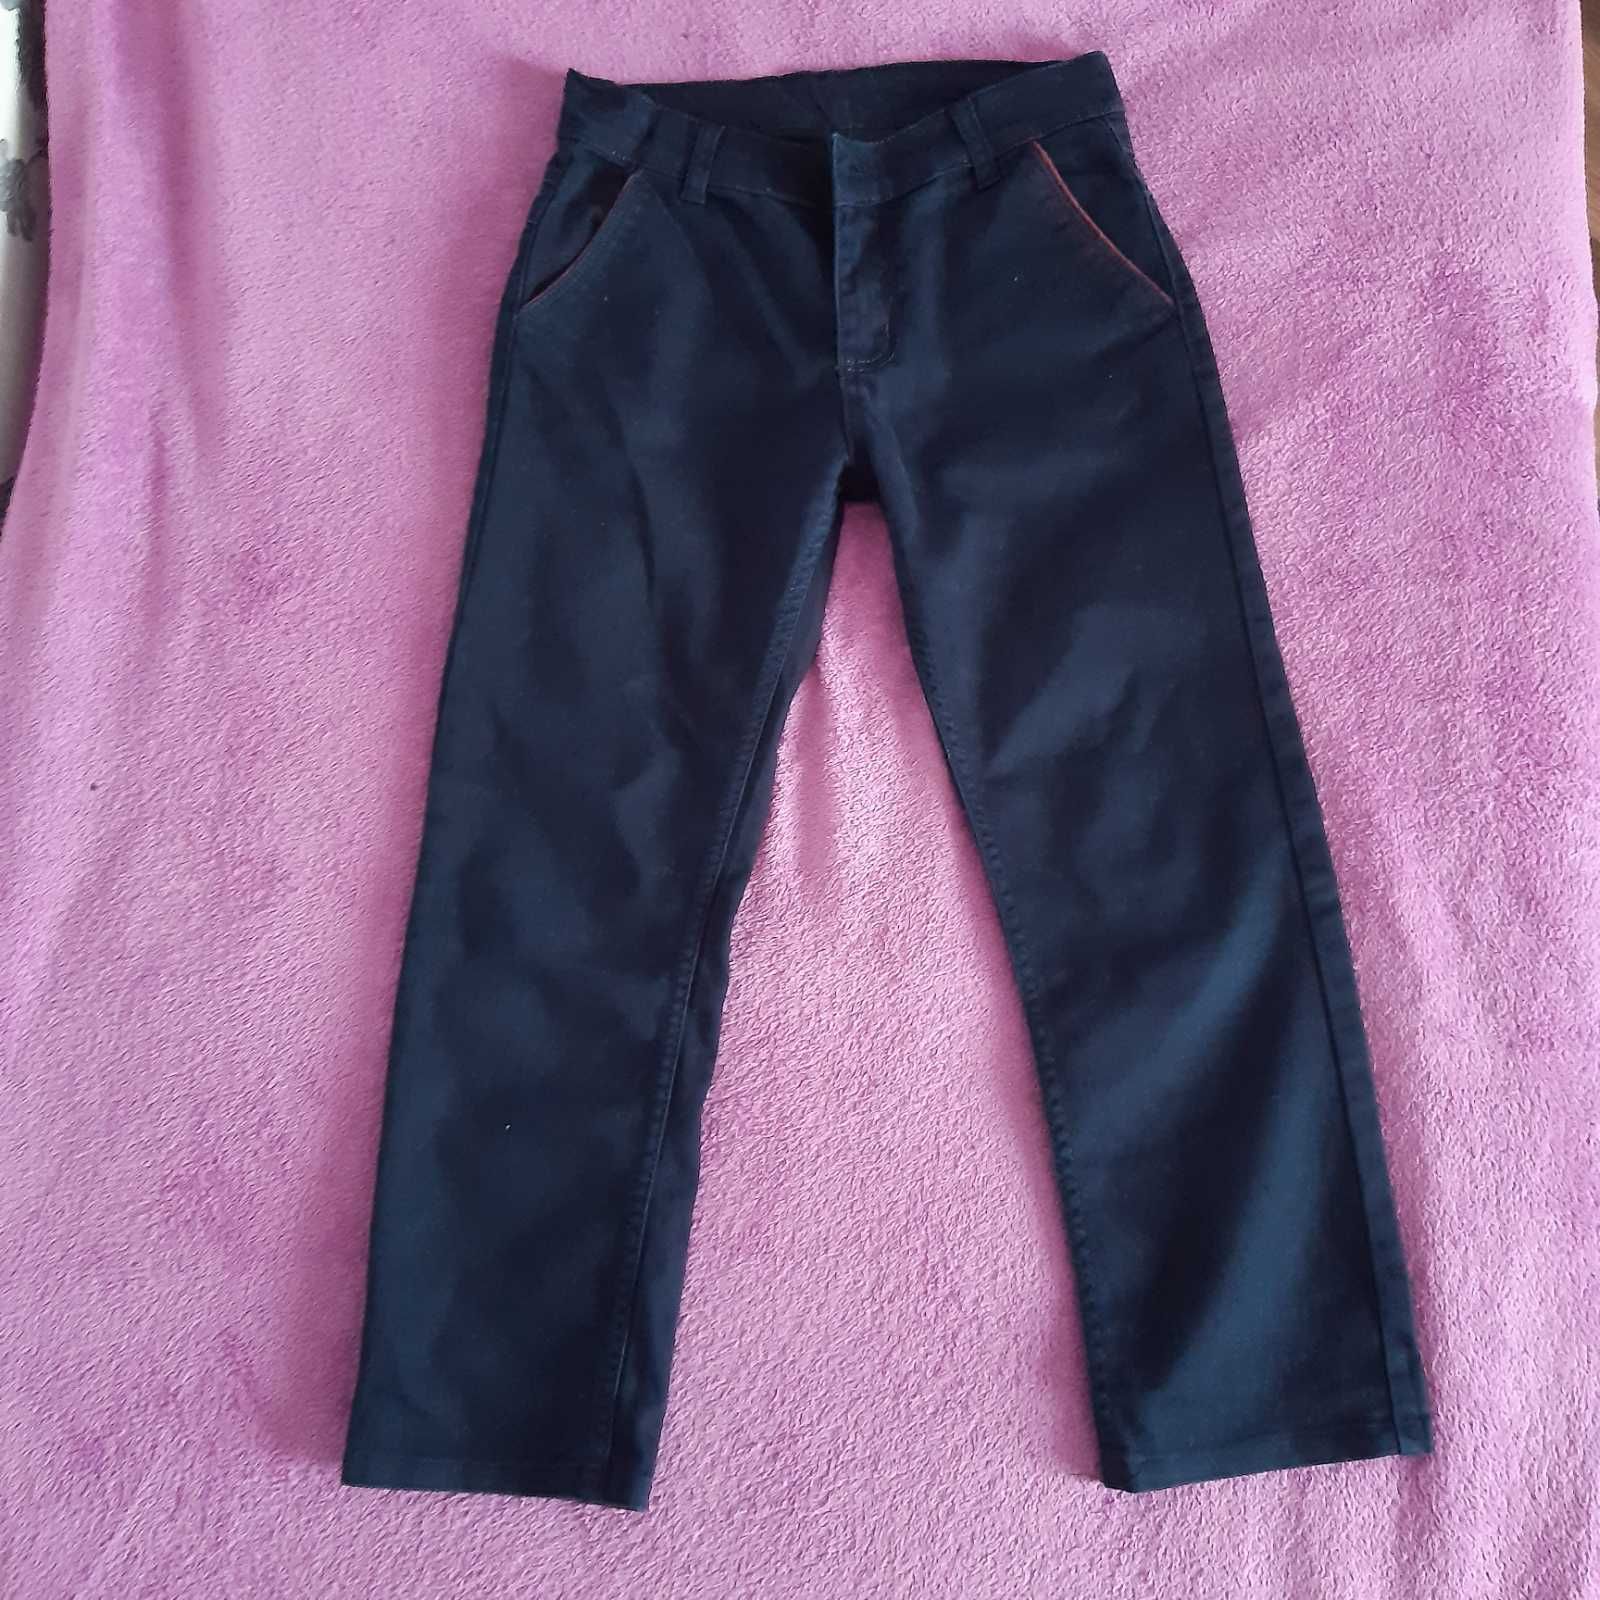 котоновые брюки на мальчика в школу синие 134-140 размер